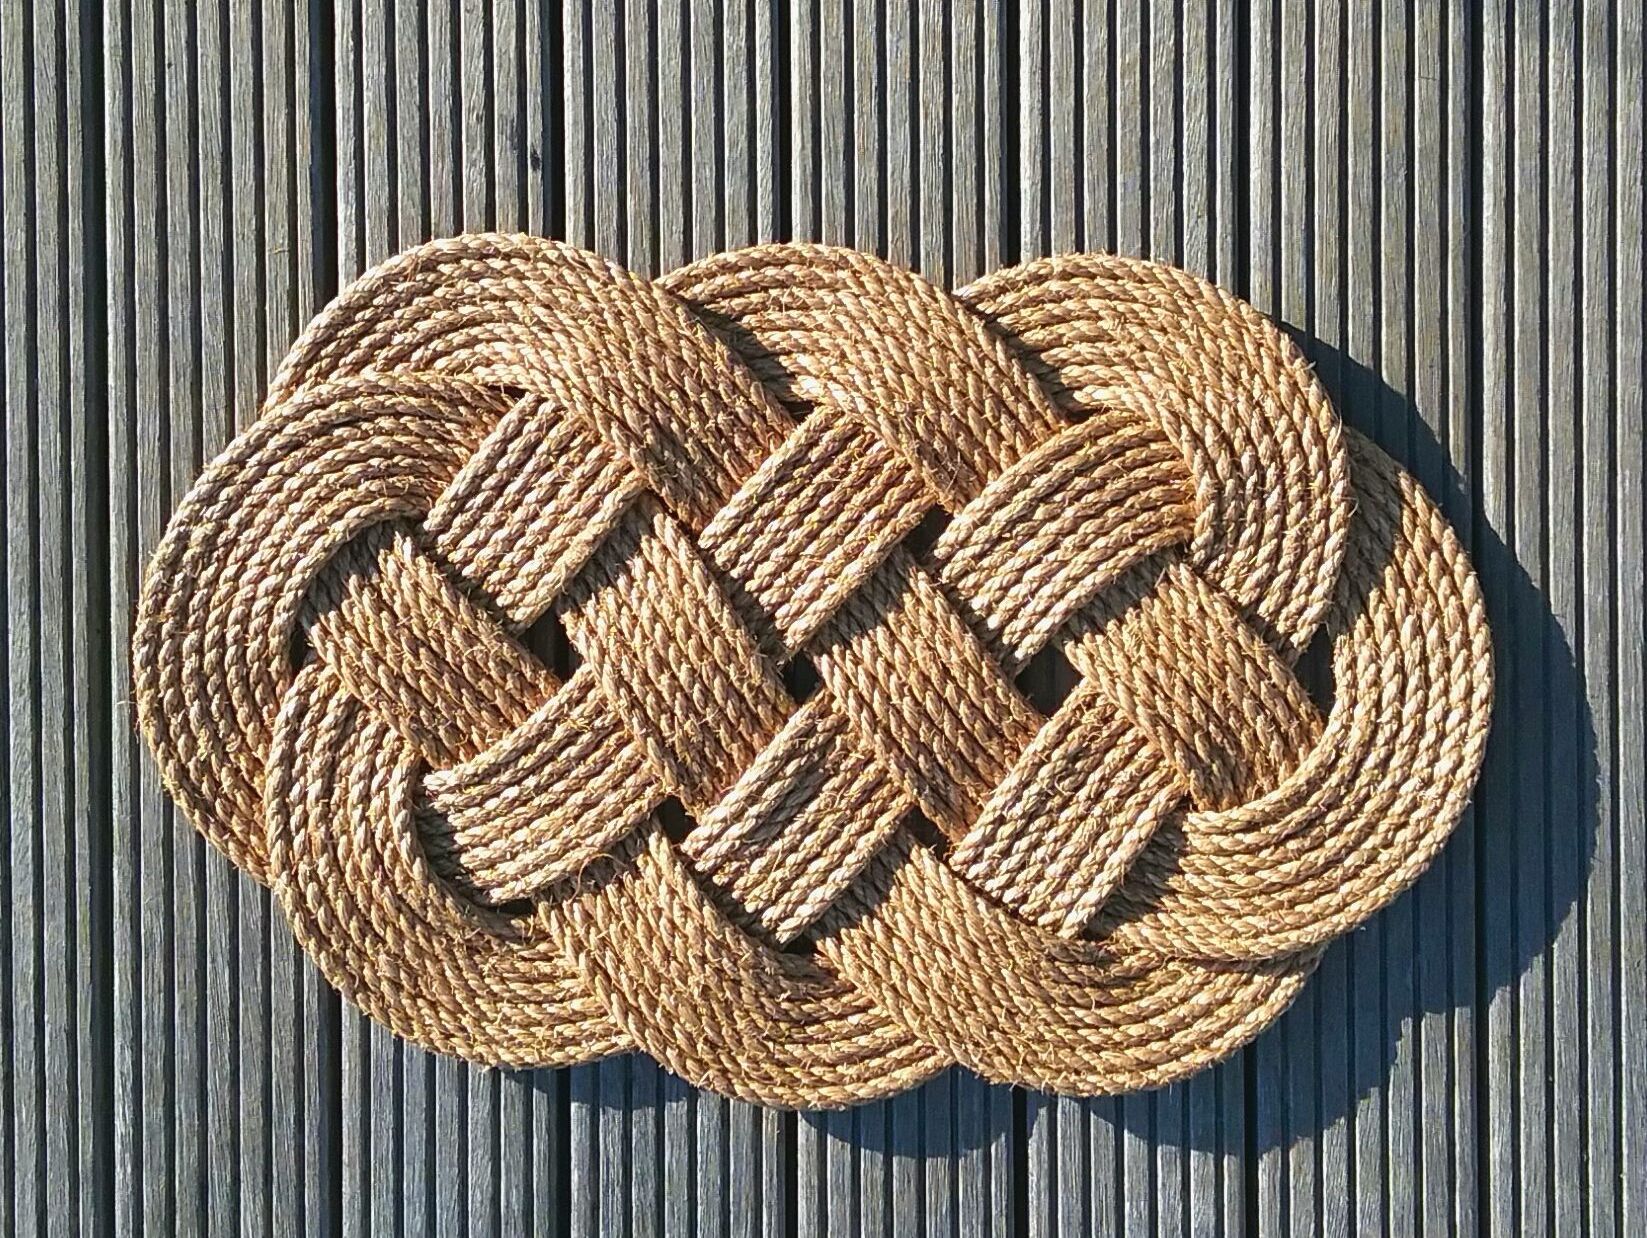 Natural rope mat